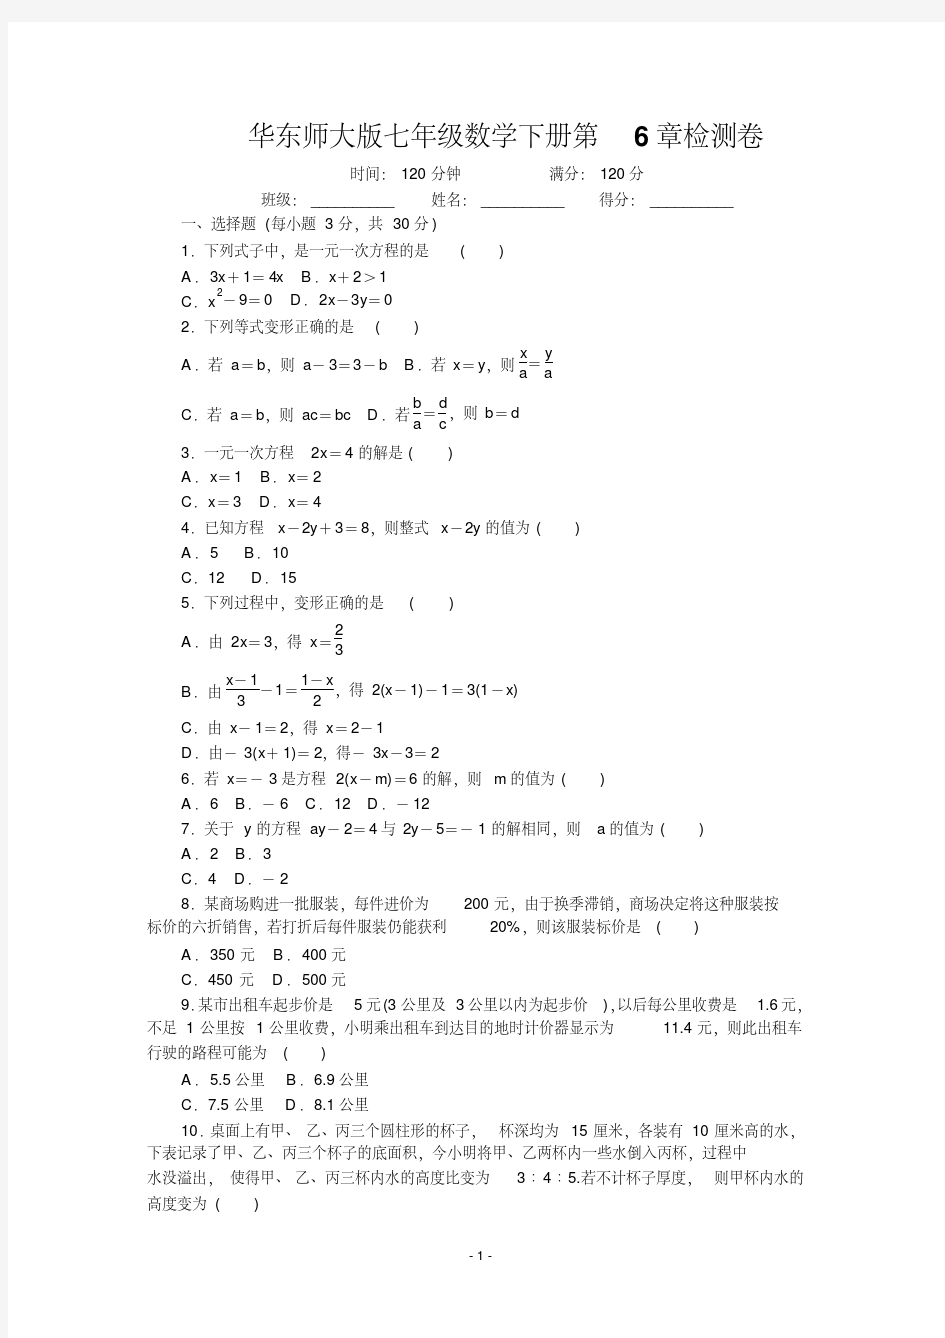 华东师大版七年级数学下册全套试卷(单元、期中、期末)